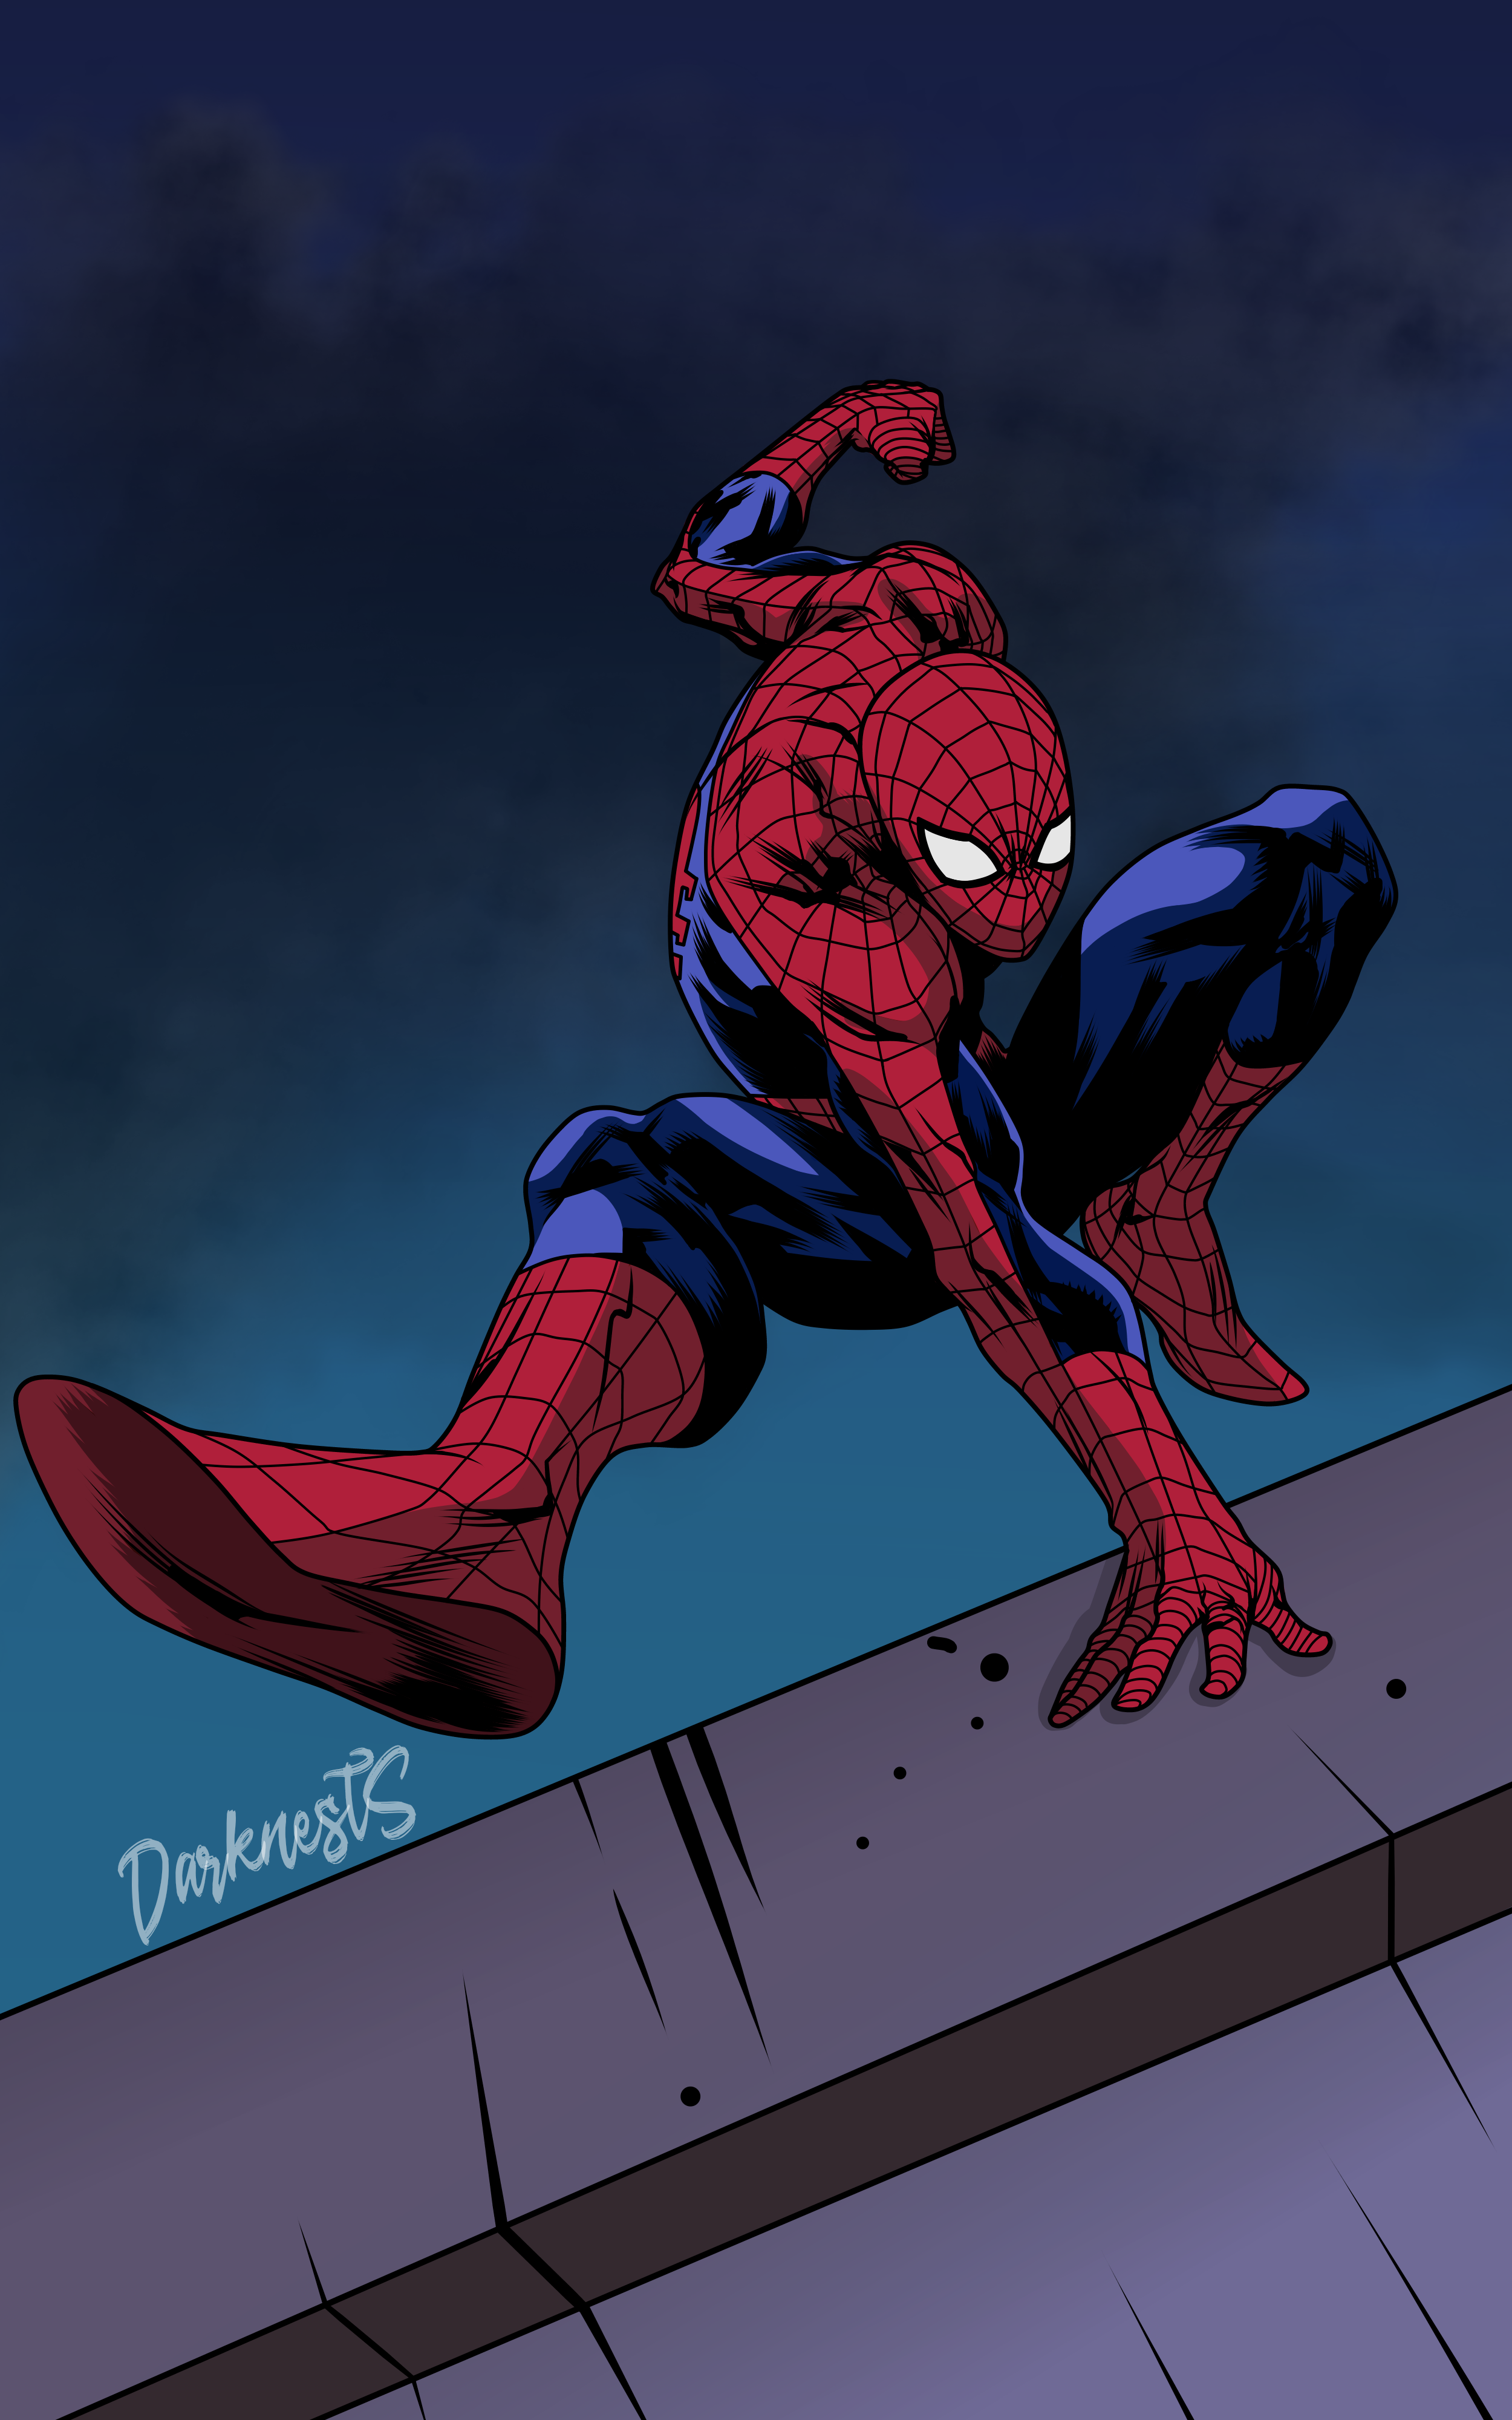 Spider-Man (The Animated Series Style) by DarknestSpawn on DeviantArt